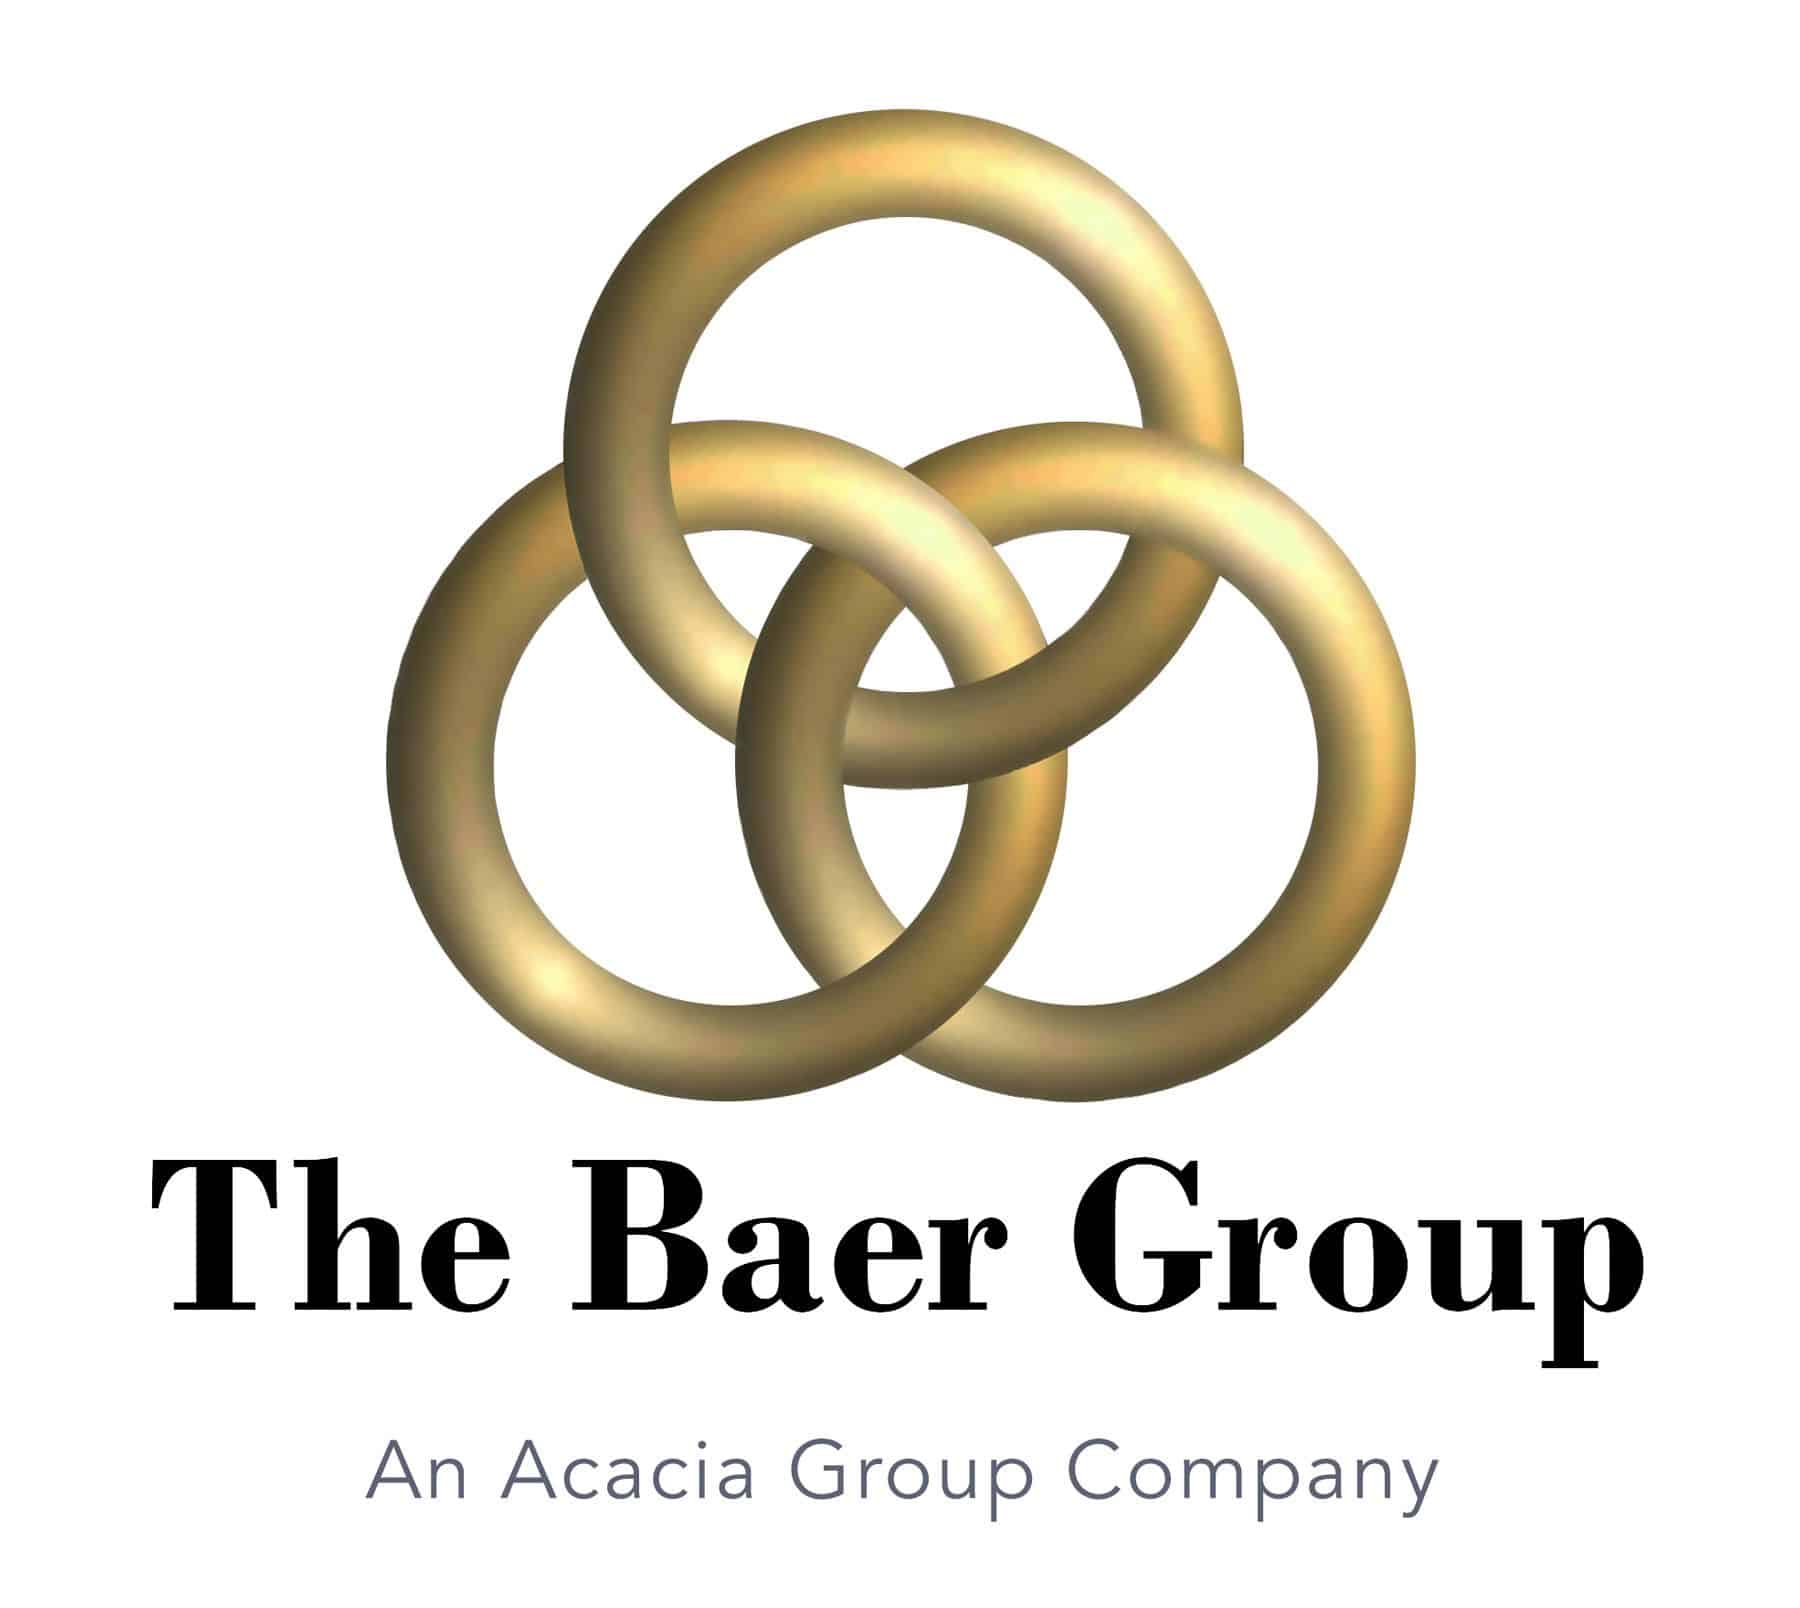 The Baer Group logo